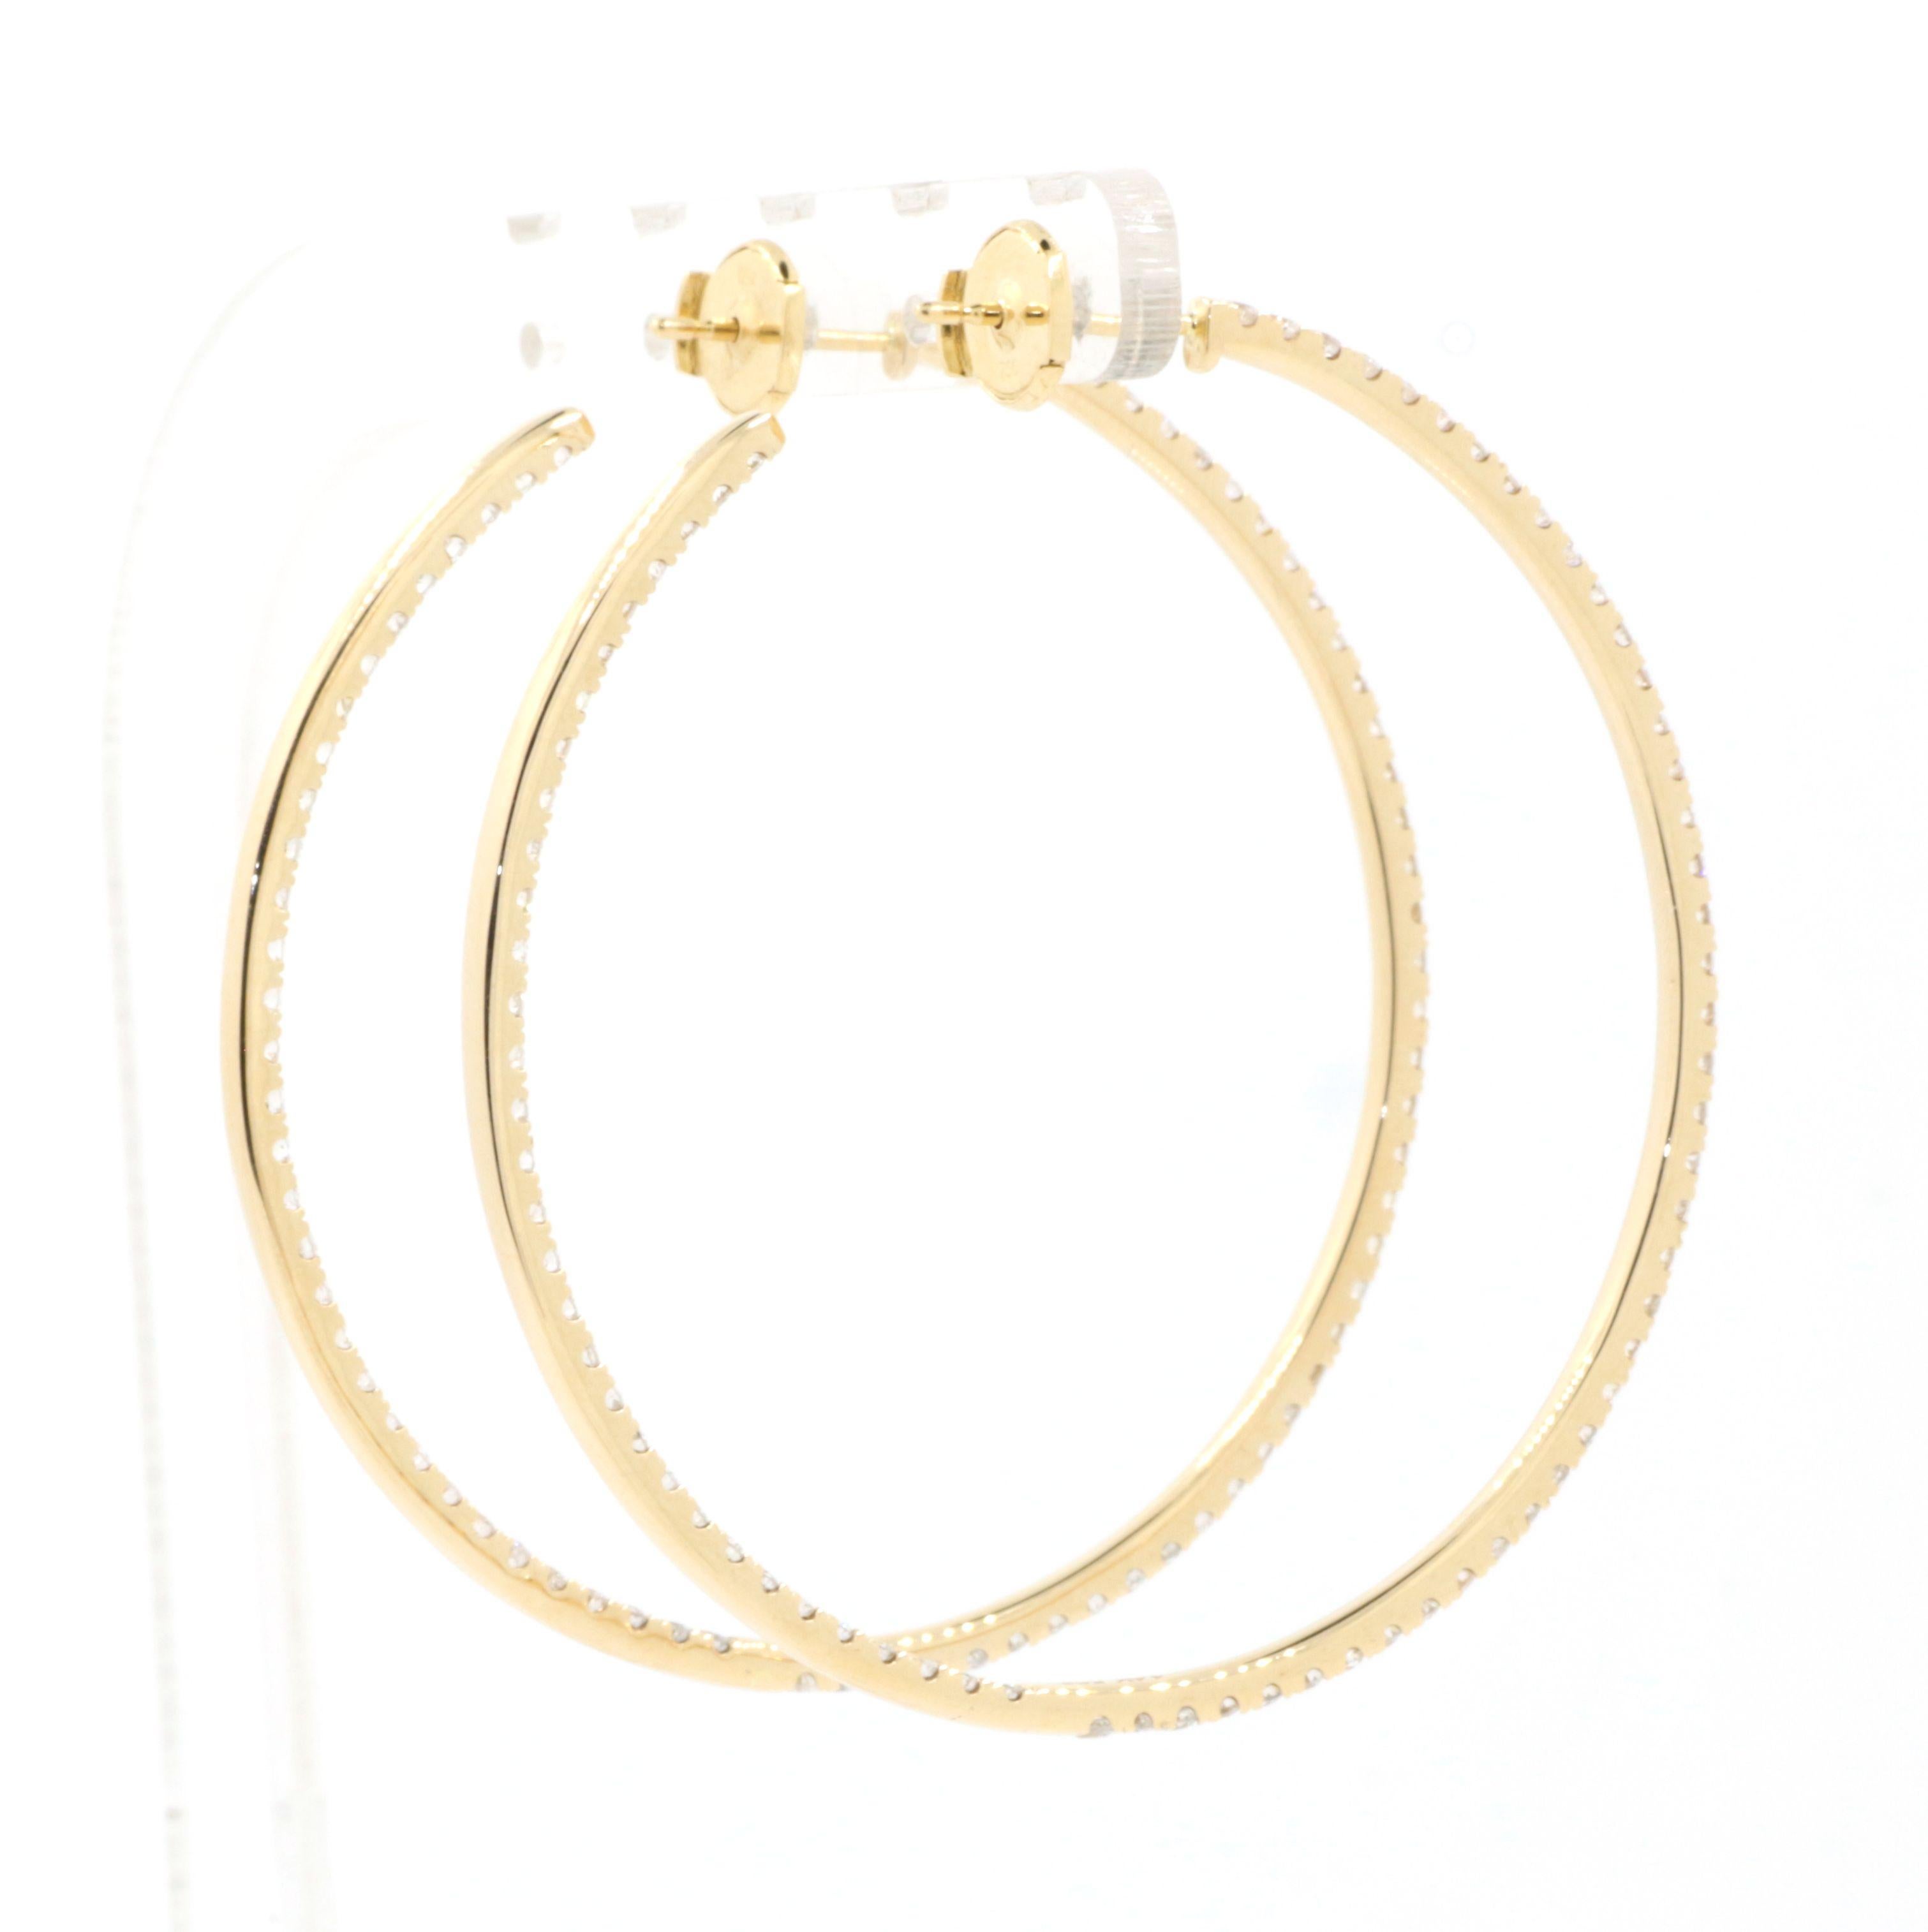 Women's 3.4 Carat Diamond Hoop Earrings in 18 Karat Yellow Gold